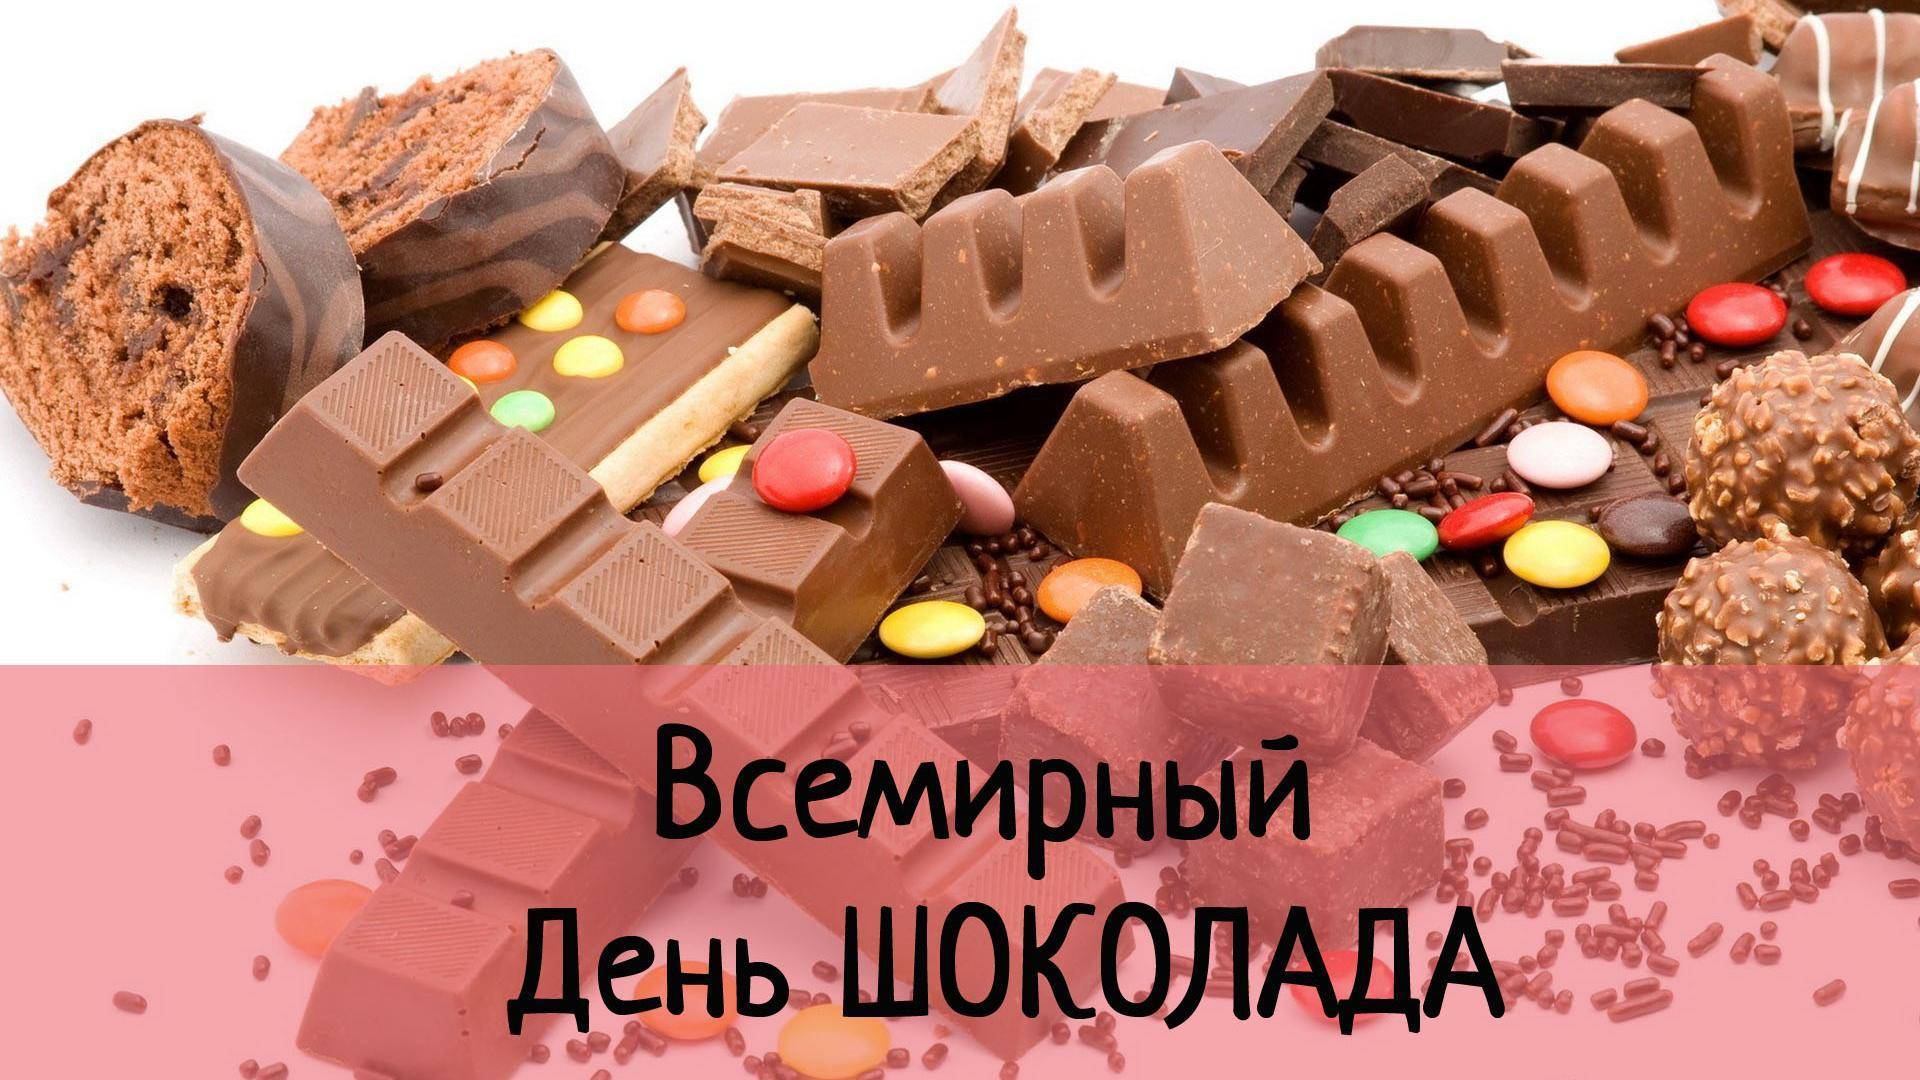 Всемирный день шоколада. история и особенности праздника